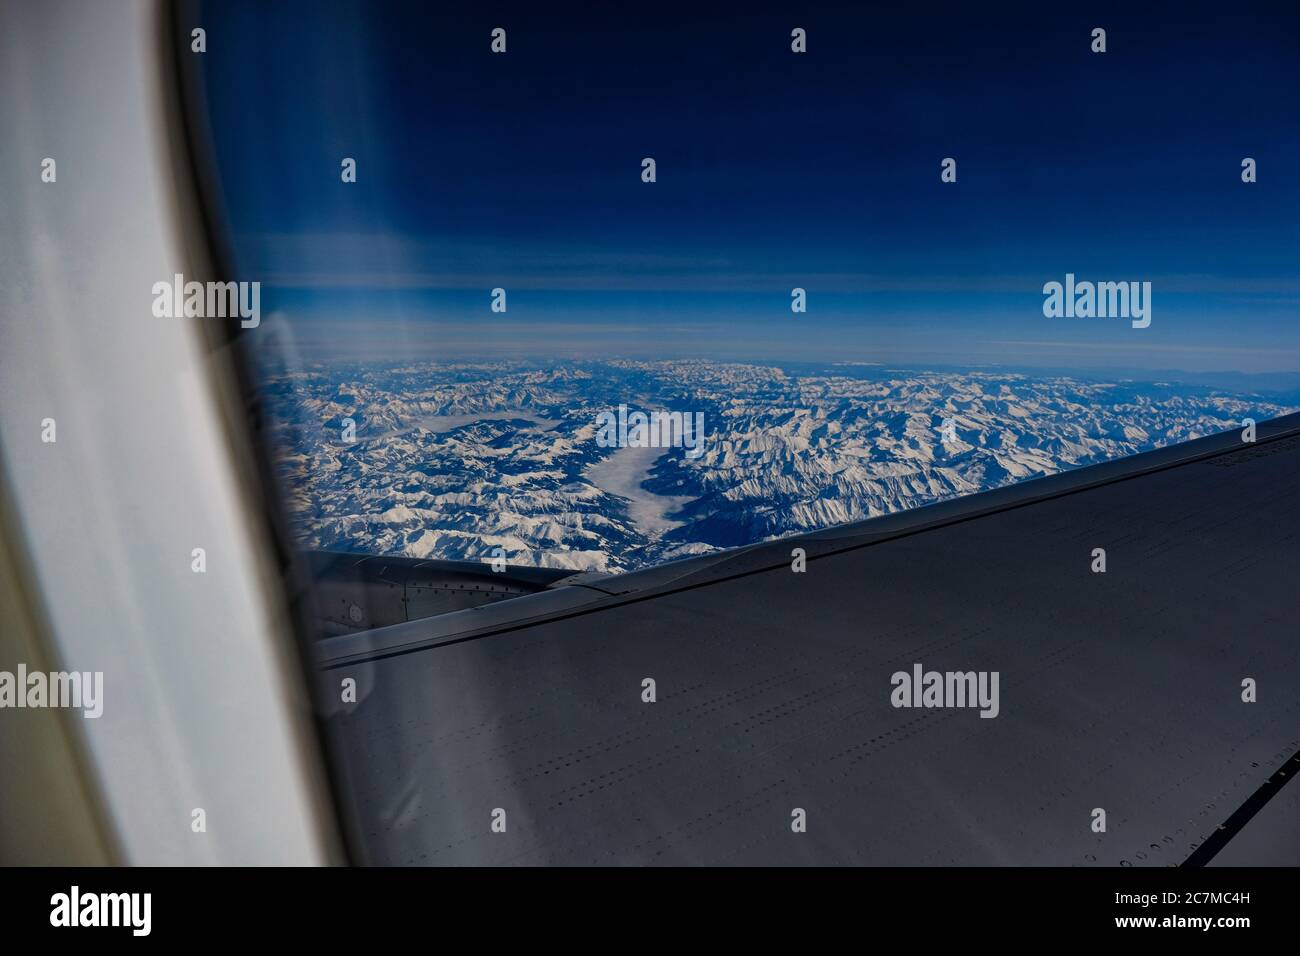 Photo des chaînes de montagnes d'une fenêtre d'avion partiellement obstruée par ailes d'avion Banque D'Images